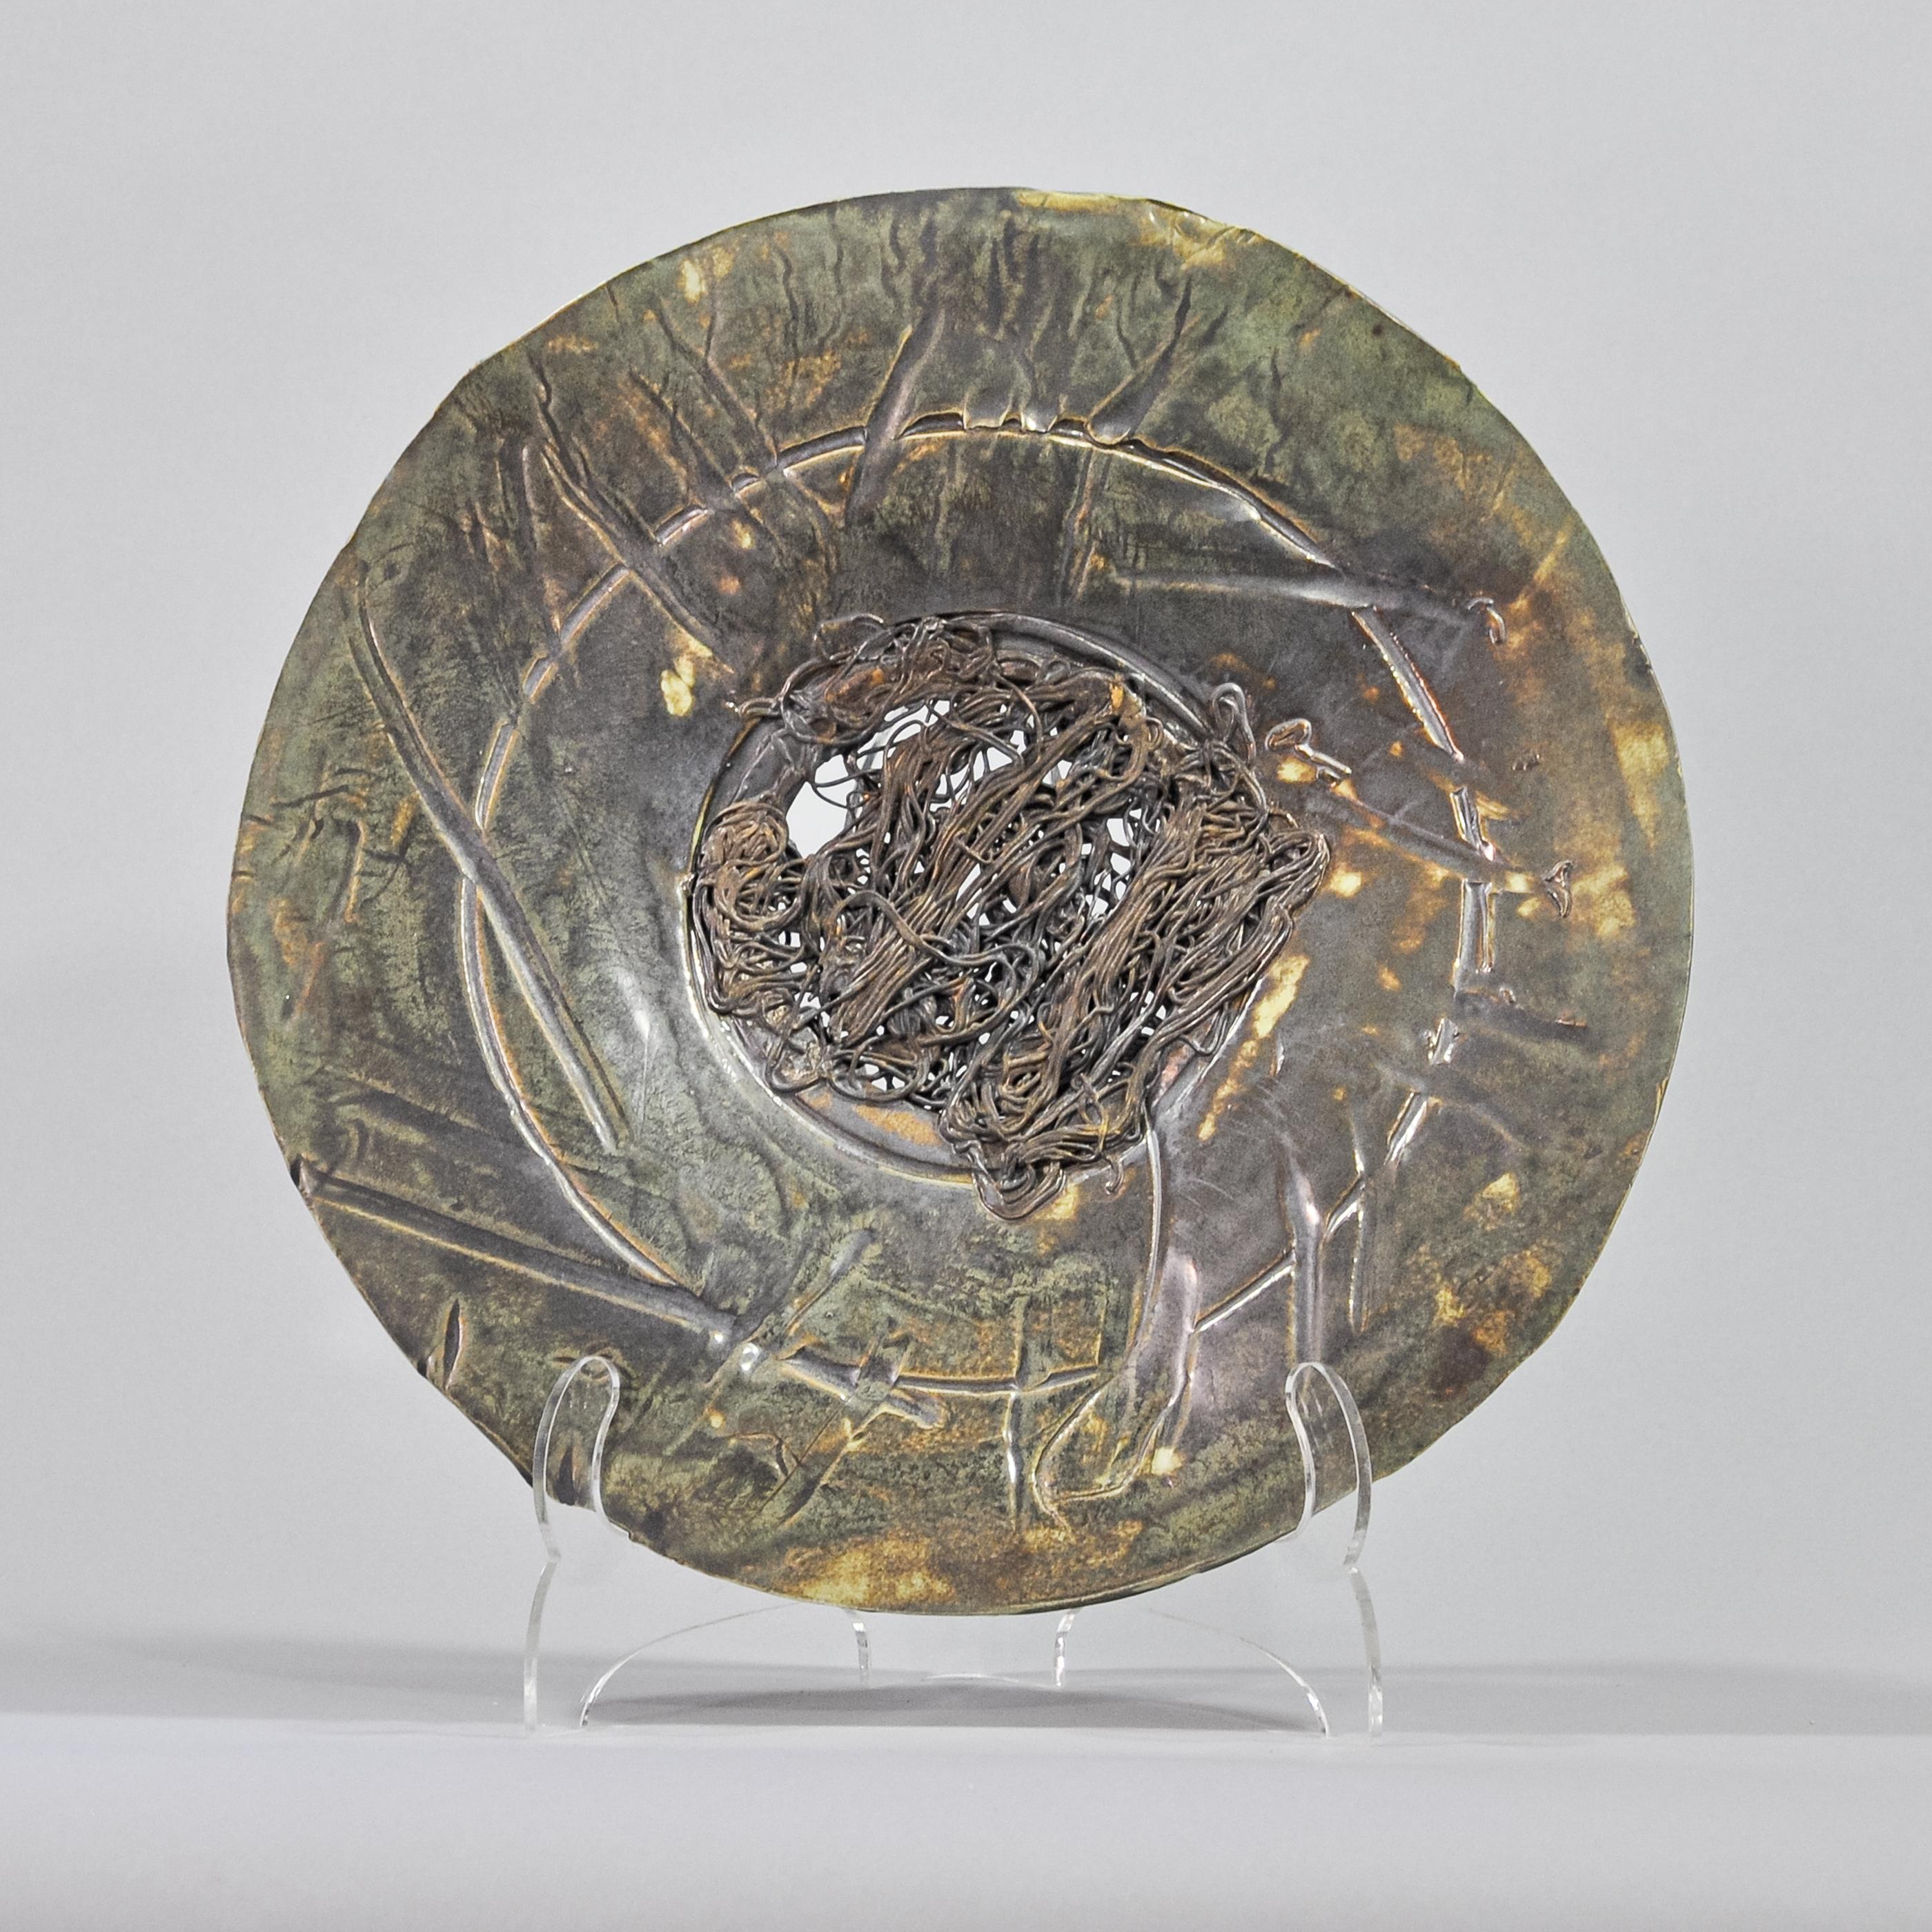 Lois Sattler Abstract Sculpture - Green metallic platter with bronze filagree center.